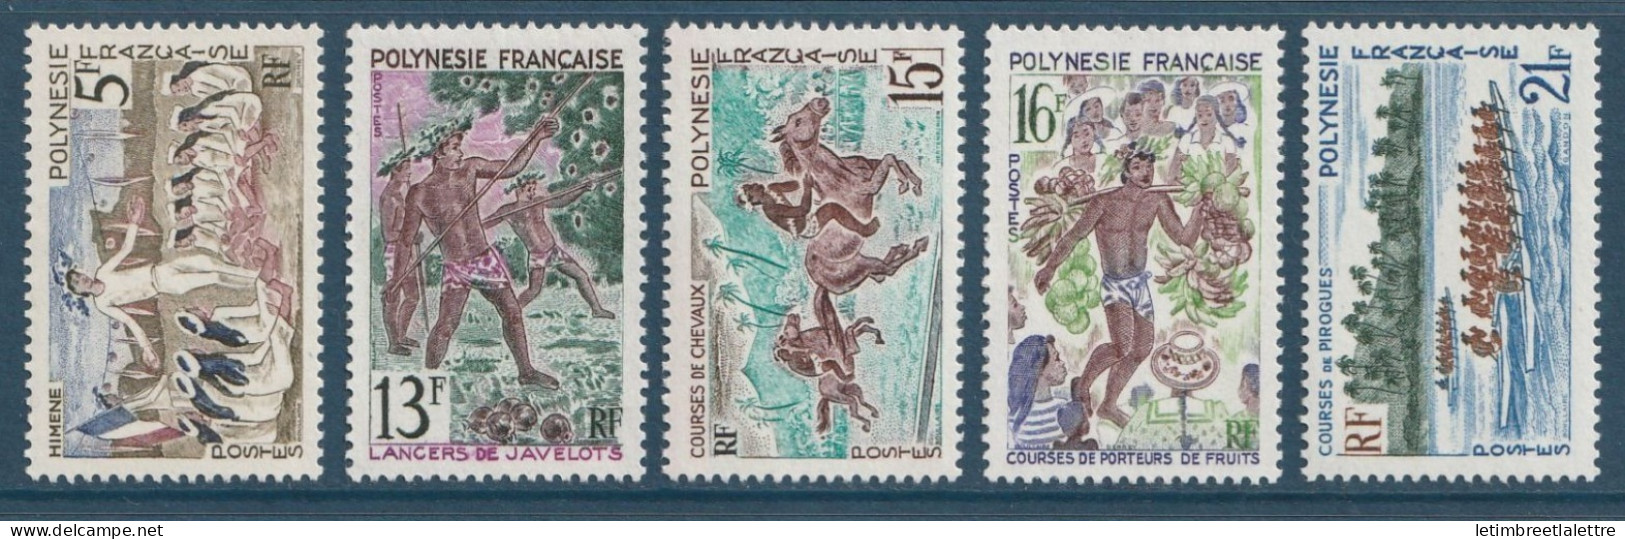 Polynésie - YT N° 47 à 51 ** - Neuf Sans Charnière - 1967 - Nuevos